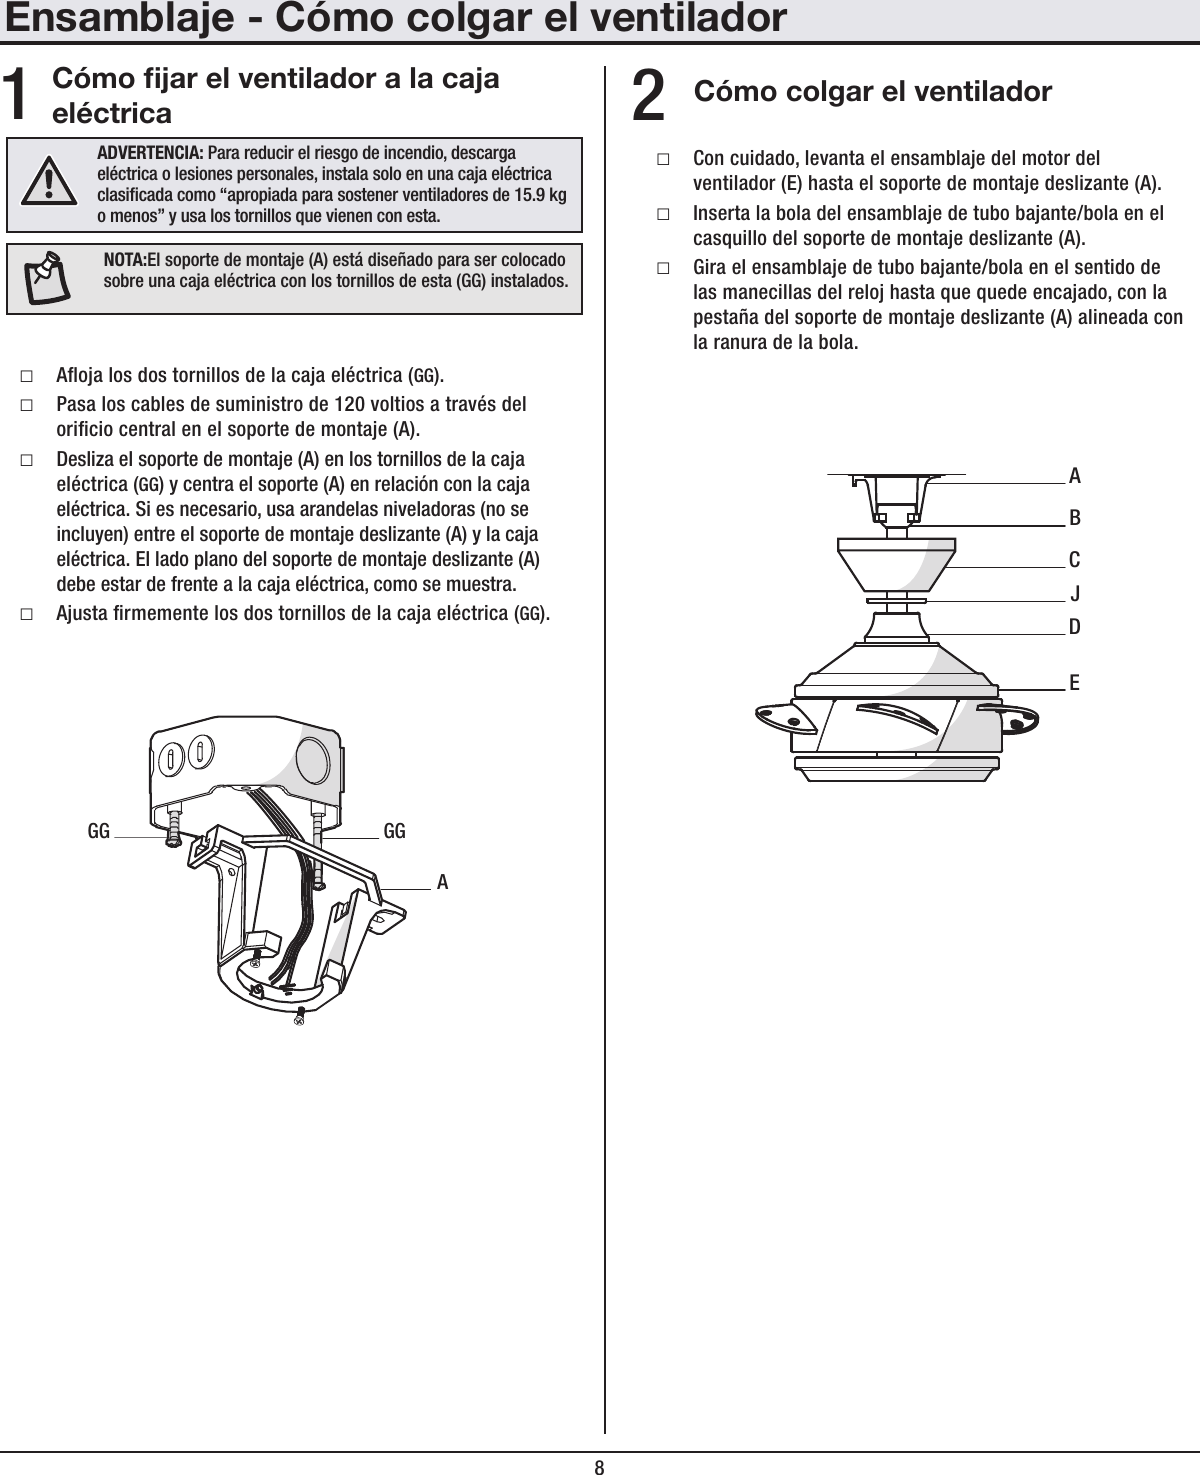 8Ensamblaje - Cómo colgar el ventiladorCómo jar el ventilador a la caja eléctrica Cómo colgar el ventilador □Aoja los dos tornillos de la caja eléctrica (GG). □Pasa los cables de suministro de 120 voltios a través del oricio central en el soporte de montaje (A). □Desliza el soporte de montaje (A) en los tornillos de la caja eléctrica (GG) y centra el soporte (A) en relación con la caja eléctrica. Si es necesario, usa arandelas niveladoras (no se incluyen) entre el soporte de montaje deslizante (A) y la caja eléctrica. El lado plano del soporte de montaje deslizante (A) debe estar de frente a la caja eléctrica, como se muestra. □Ajusta rmemente los dos tornillos de la caja eléctrica (GG). □Con cuidado, levanta el ensamblaje del motor del ventilador (E) hasta el soporte de montaje deslizante (A). □Inserta la bola del ensamblaje de tubo bajante/bola en el casquillo del soporte de montaje deslizante (A). □Gira el ensamblaje de tubo bajante/bola en el sentido de las manecillas del reloj hasta que quede encajado, con la pestaña del soporte de montaje deslizante (A) alineada con la ranura de la bola.12ADVERTENCIA: Para reducir el riesgo de incendio, descarga eléctrica o lesiones personales, instala solo en una caja eléctrica clasicada como “apropiada para sostener ventiladores de 15.9 kg o menos” y usa los tornillos que vienen con esta.AGGGGABECDJNOTA:El soporte de montaje (A) está diseñado para ser colocado sobre una caja eléctrica con los tornillos de esta (GG) instalados.